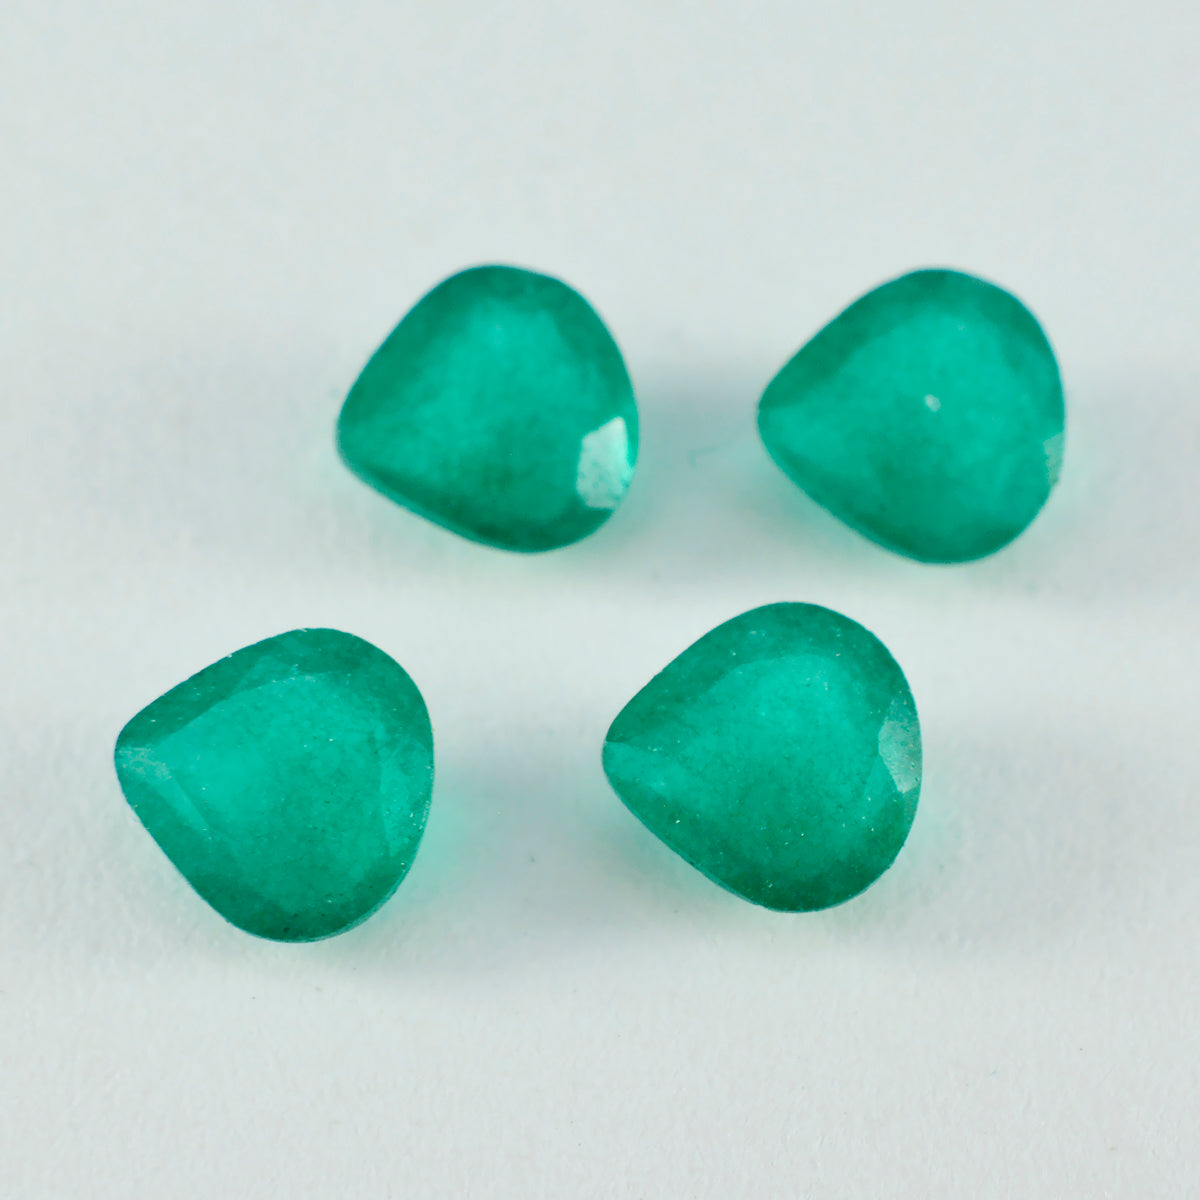 Riyogems 1pc véritable jaspe vert à facettes 14x14mm forme de coeur bonne qualité pierre précieuse